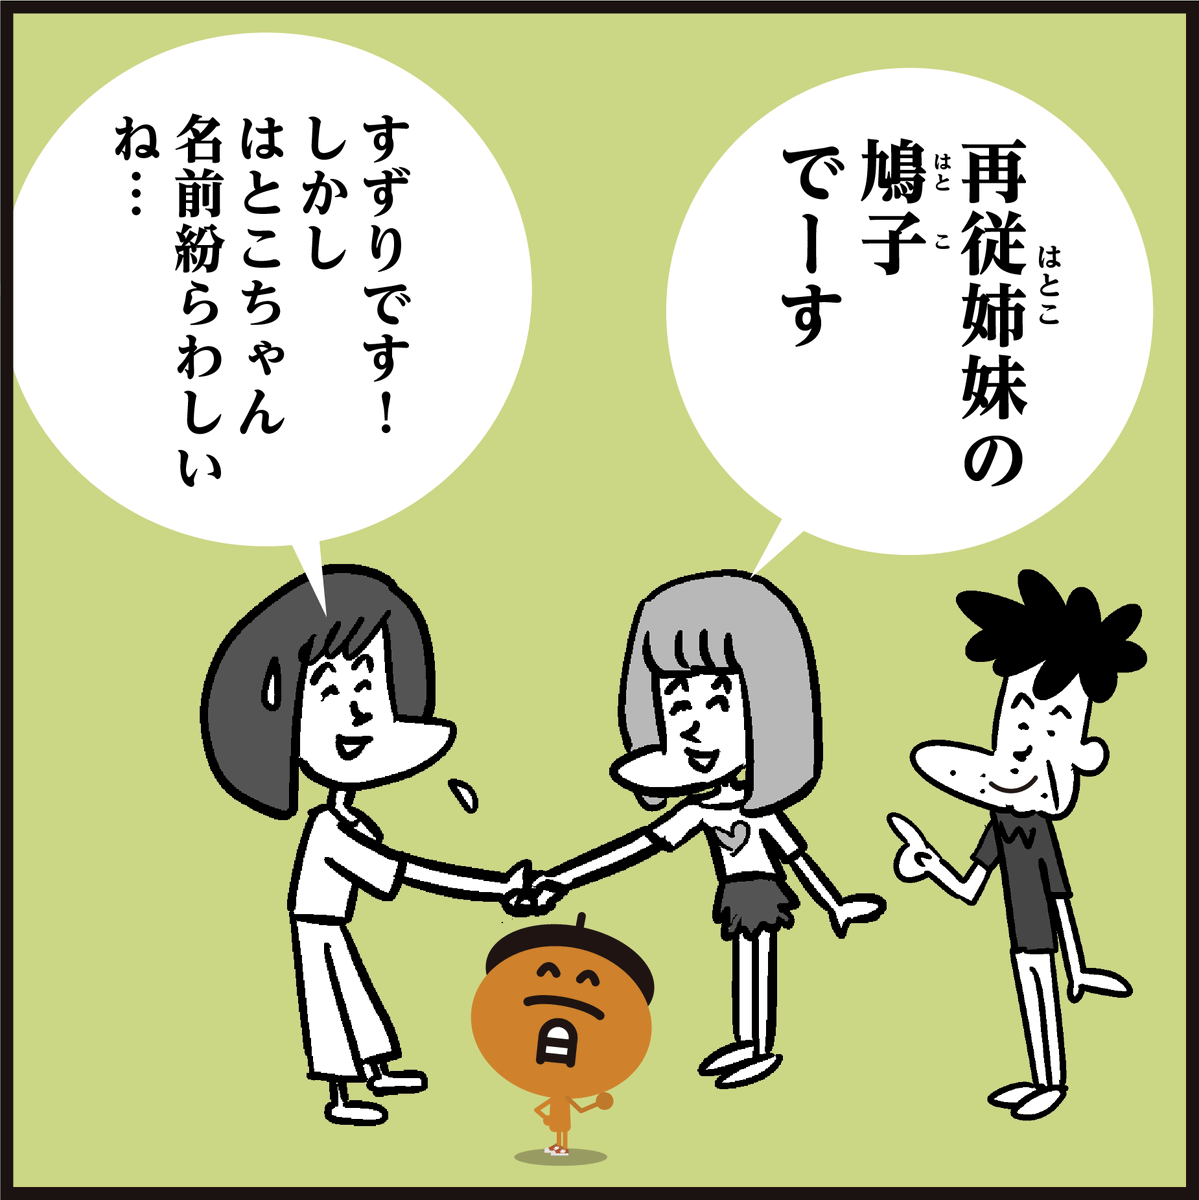 🤔漢字「再従姉妹」読める??
「いとこ? とは違うし…」
#イラスト #4コマ漫画 #家族 